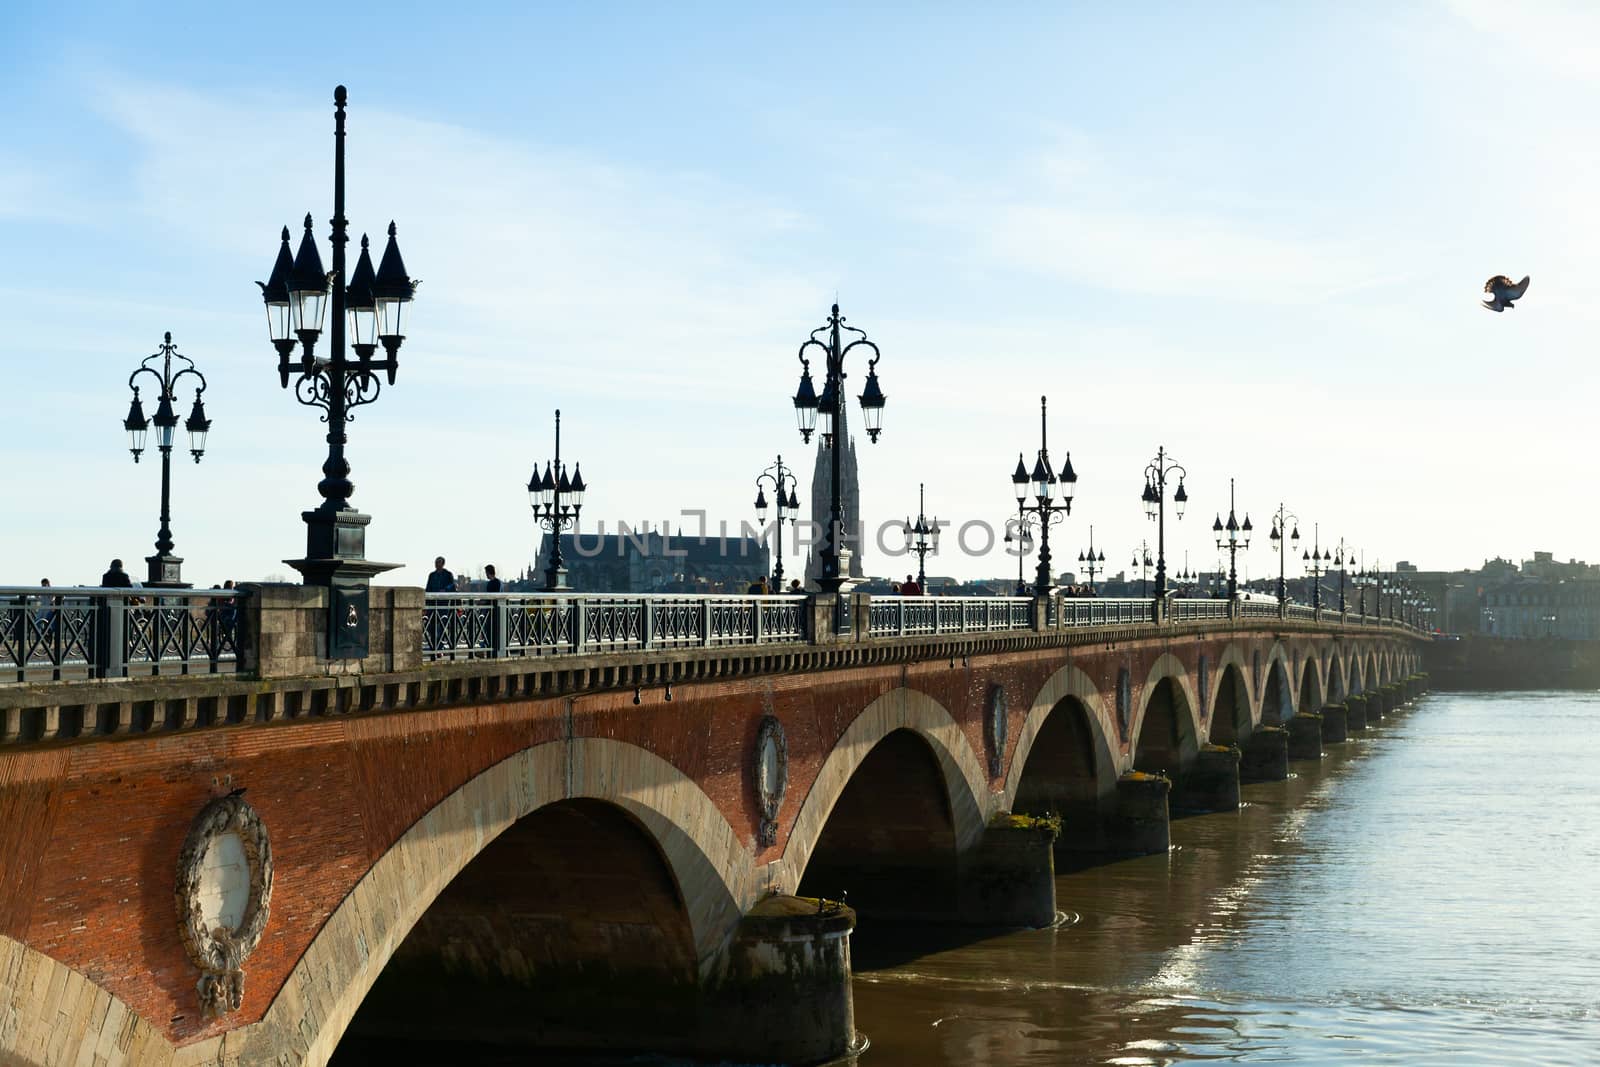 Pont de pierre (Stone Bridge) on a bright sunny day, Bordeaux, France by vlad-m